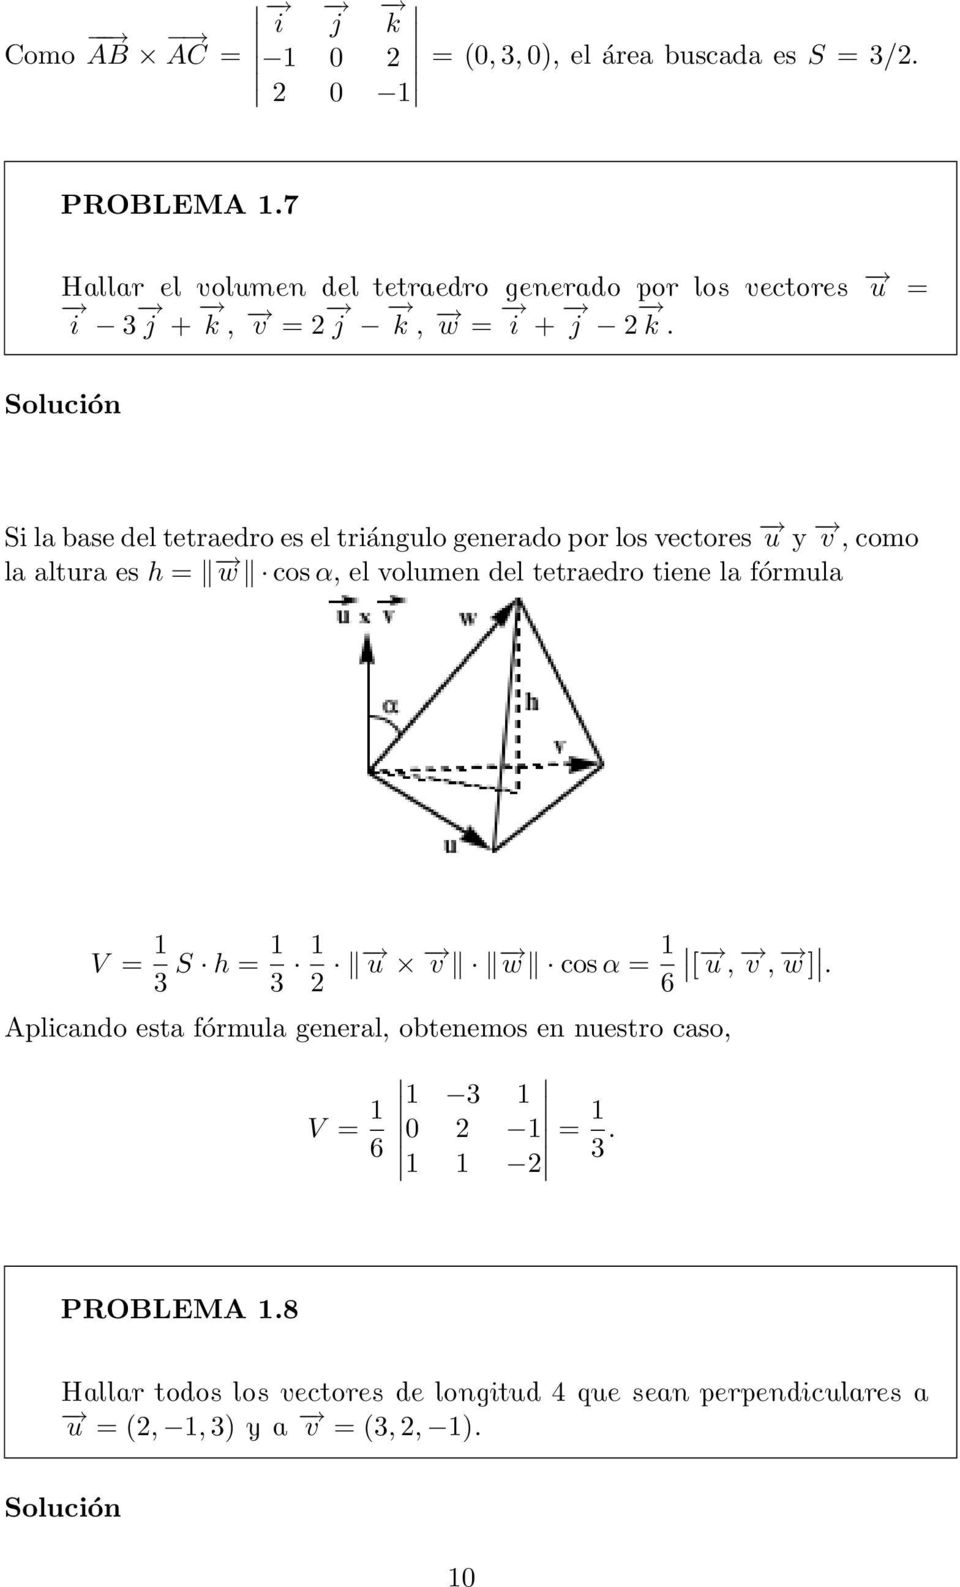 Si la base del tetraedro es el triángulo generado por los vectores u y v, como la altura es h = w cos α, el volumen del tetraedro tiene la fórmula